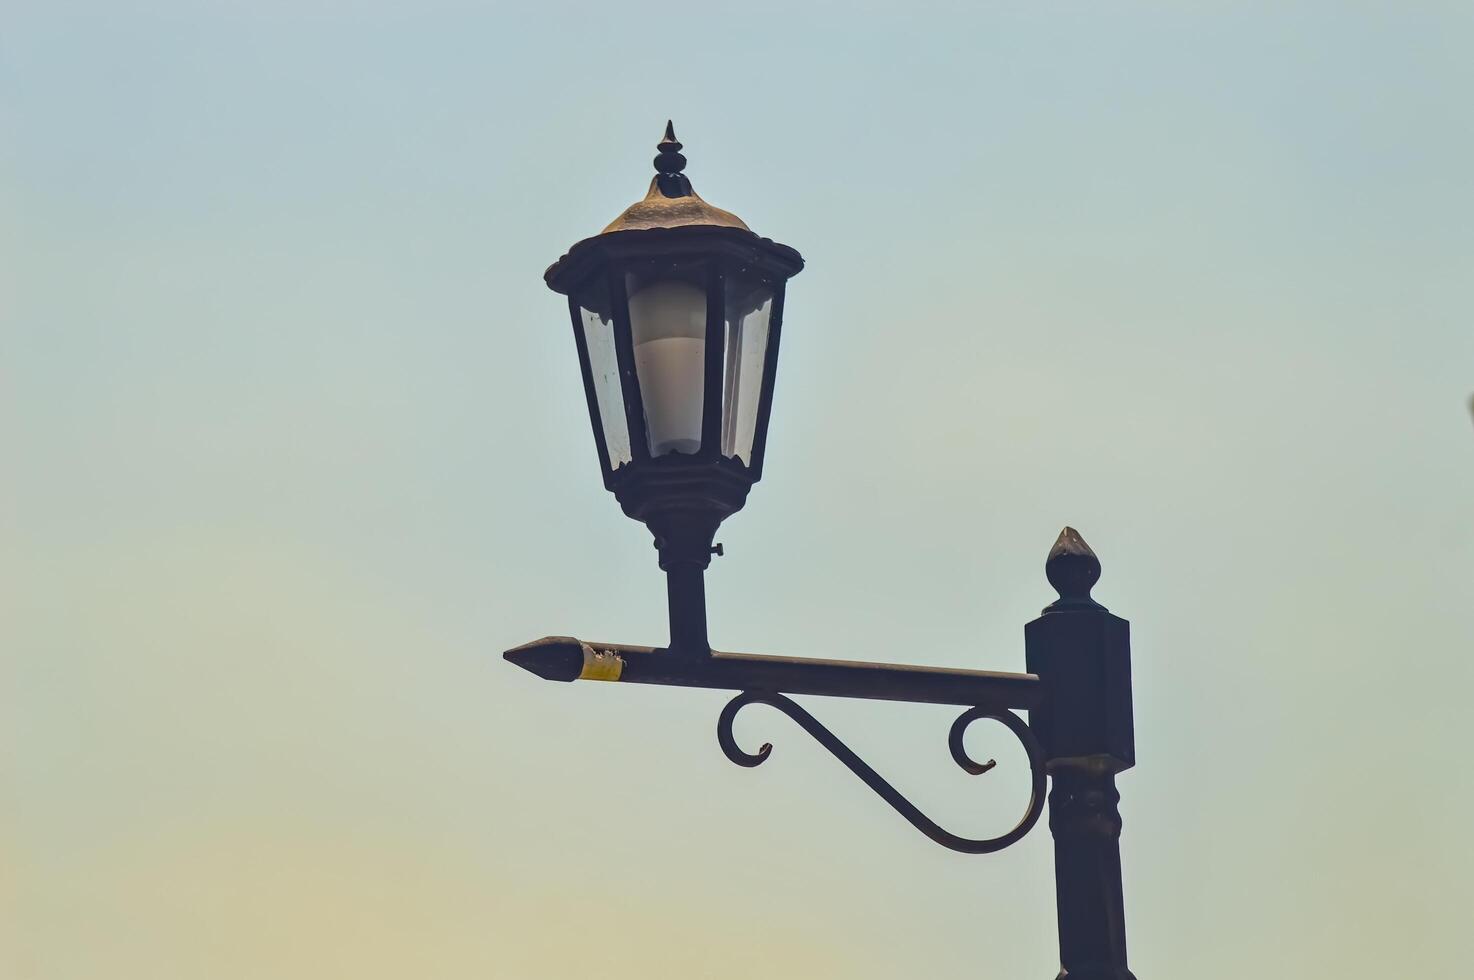 un antique et classique jardin lampe dans le forme de une lanterne photo